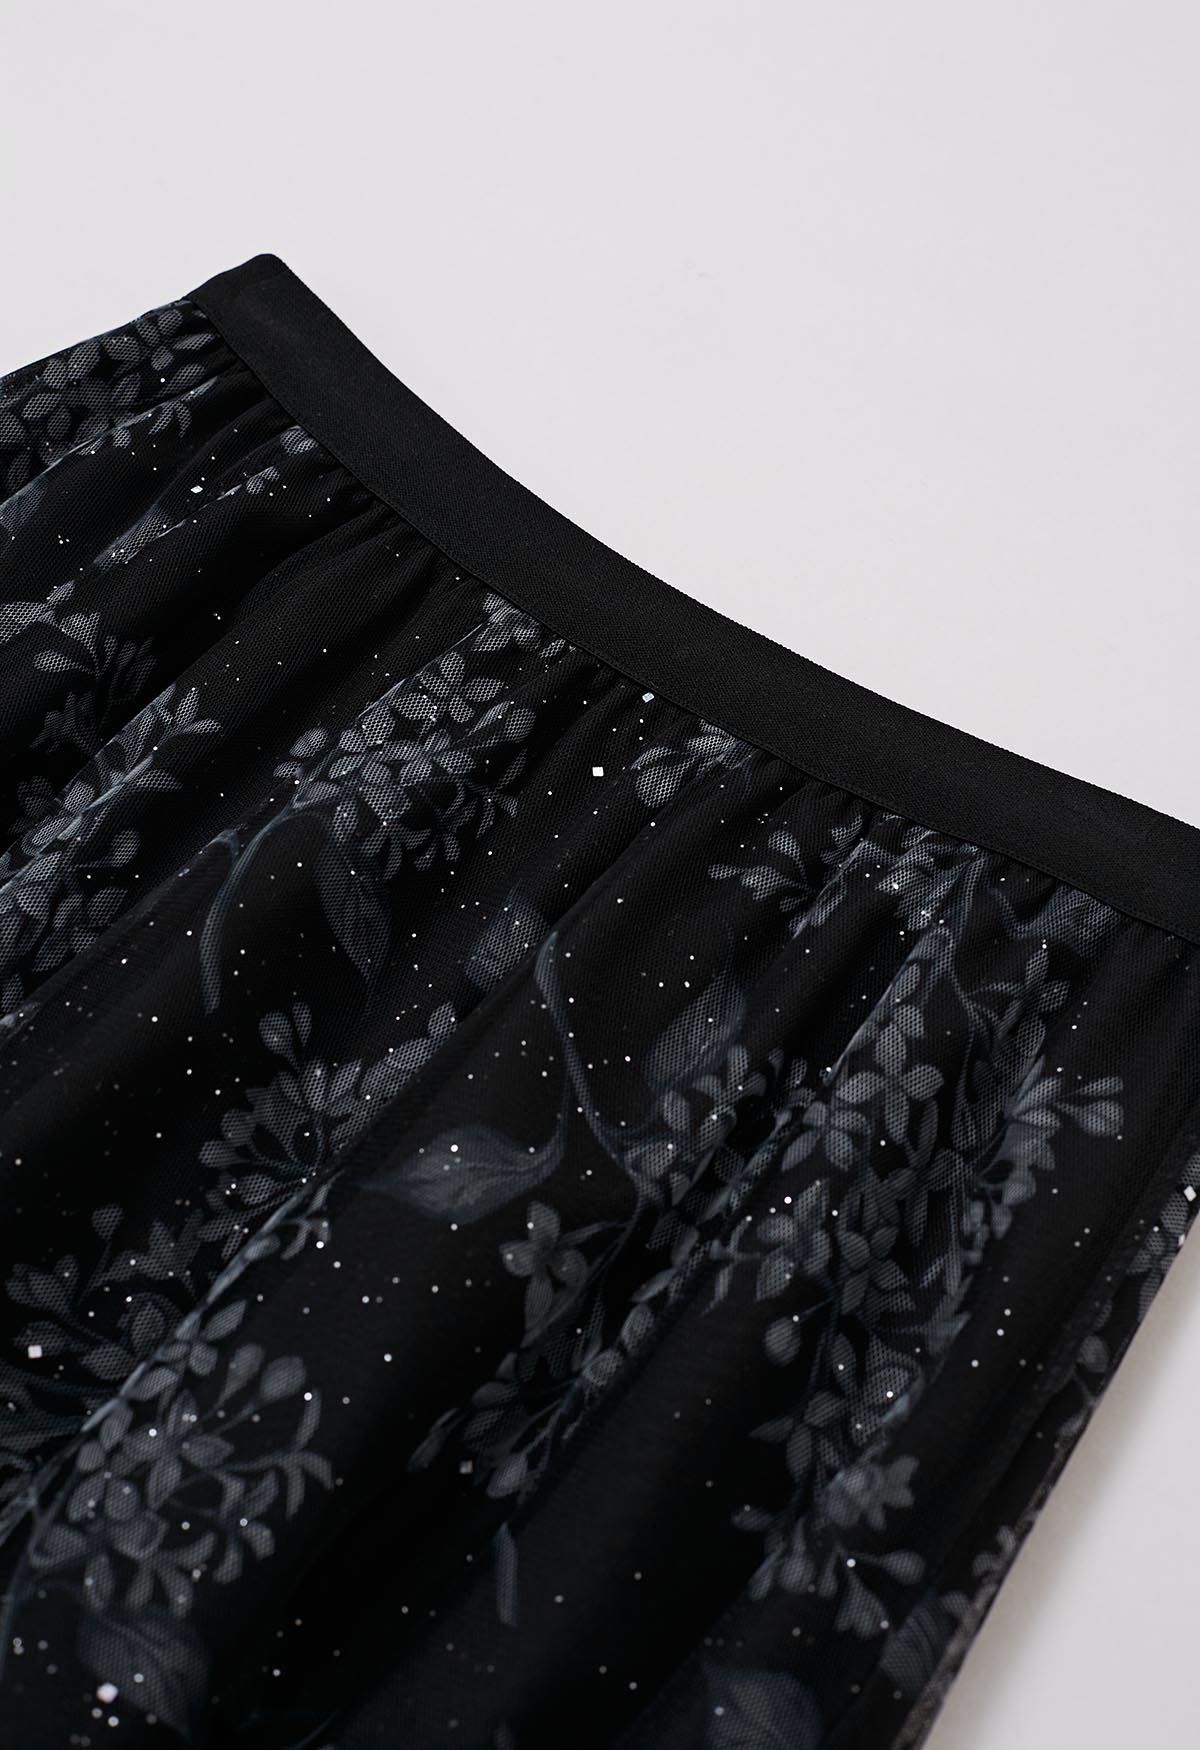 Shimmer Floral Mesh Tulle Midi Skirt in Black